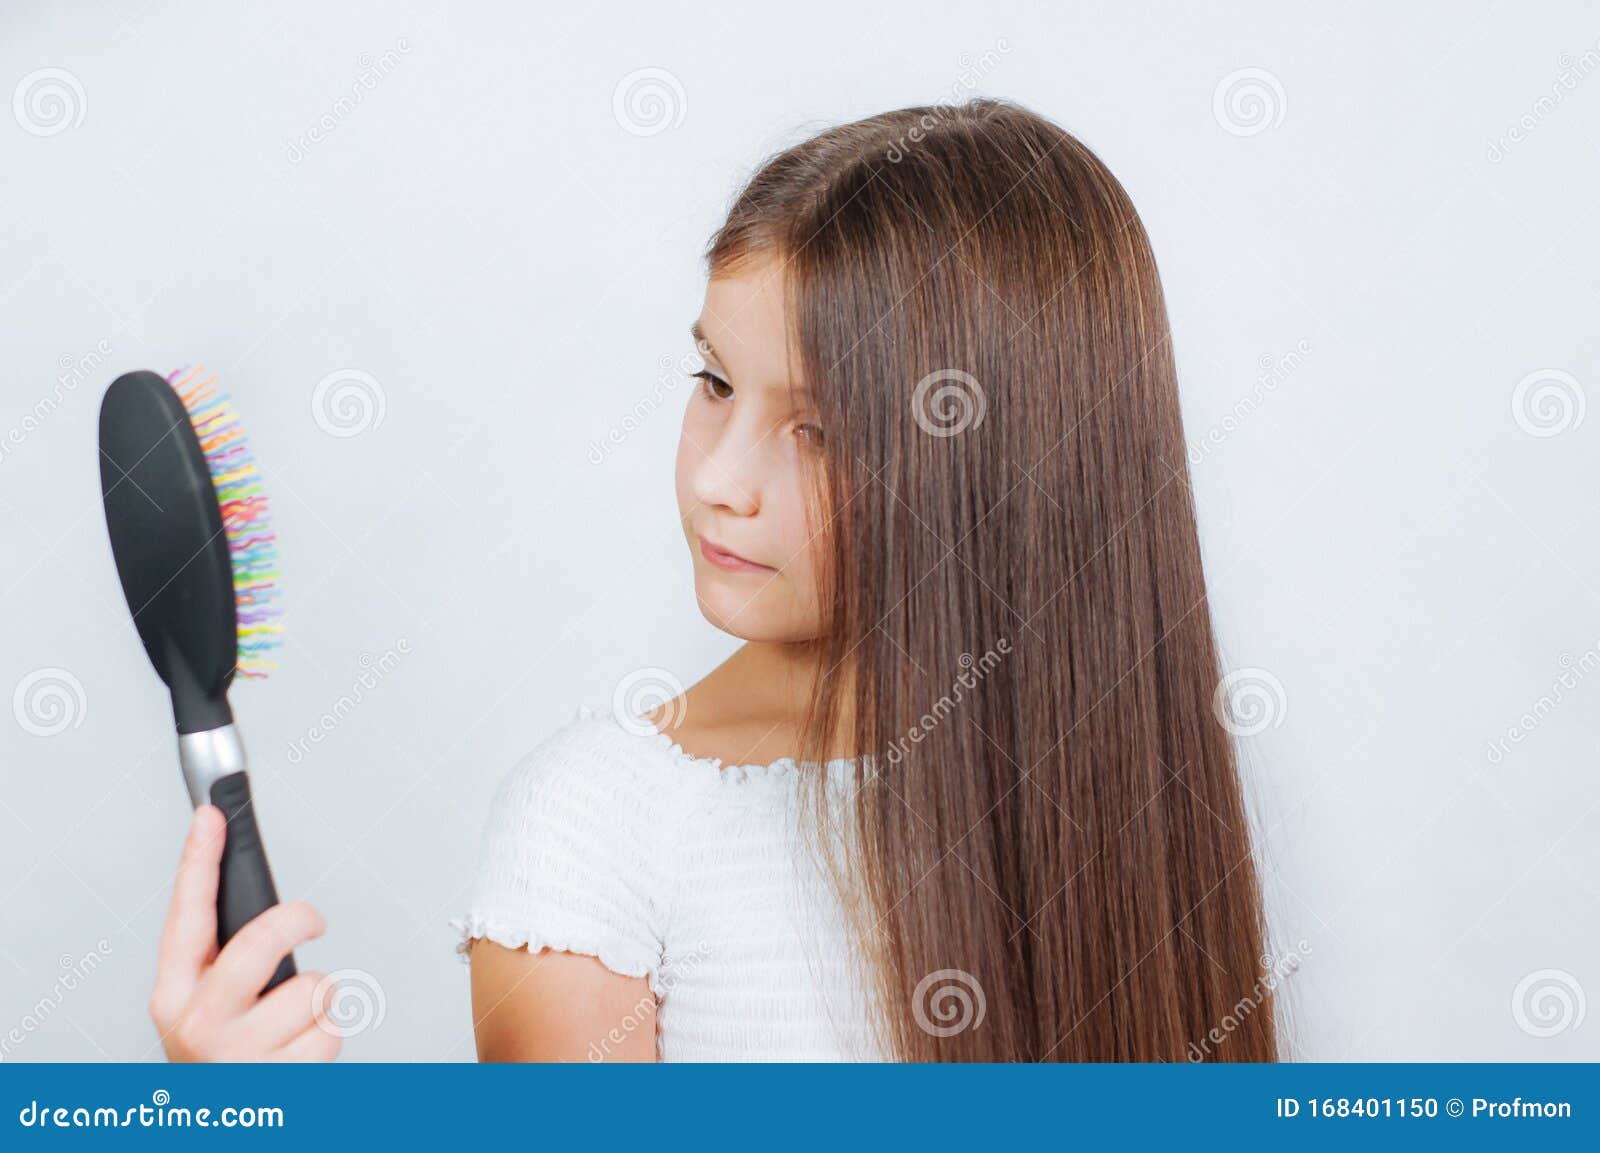 微笑的小女孩梳头发的肖像照片摄影图片_ID:137913828-Veer图库